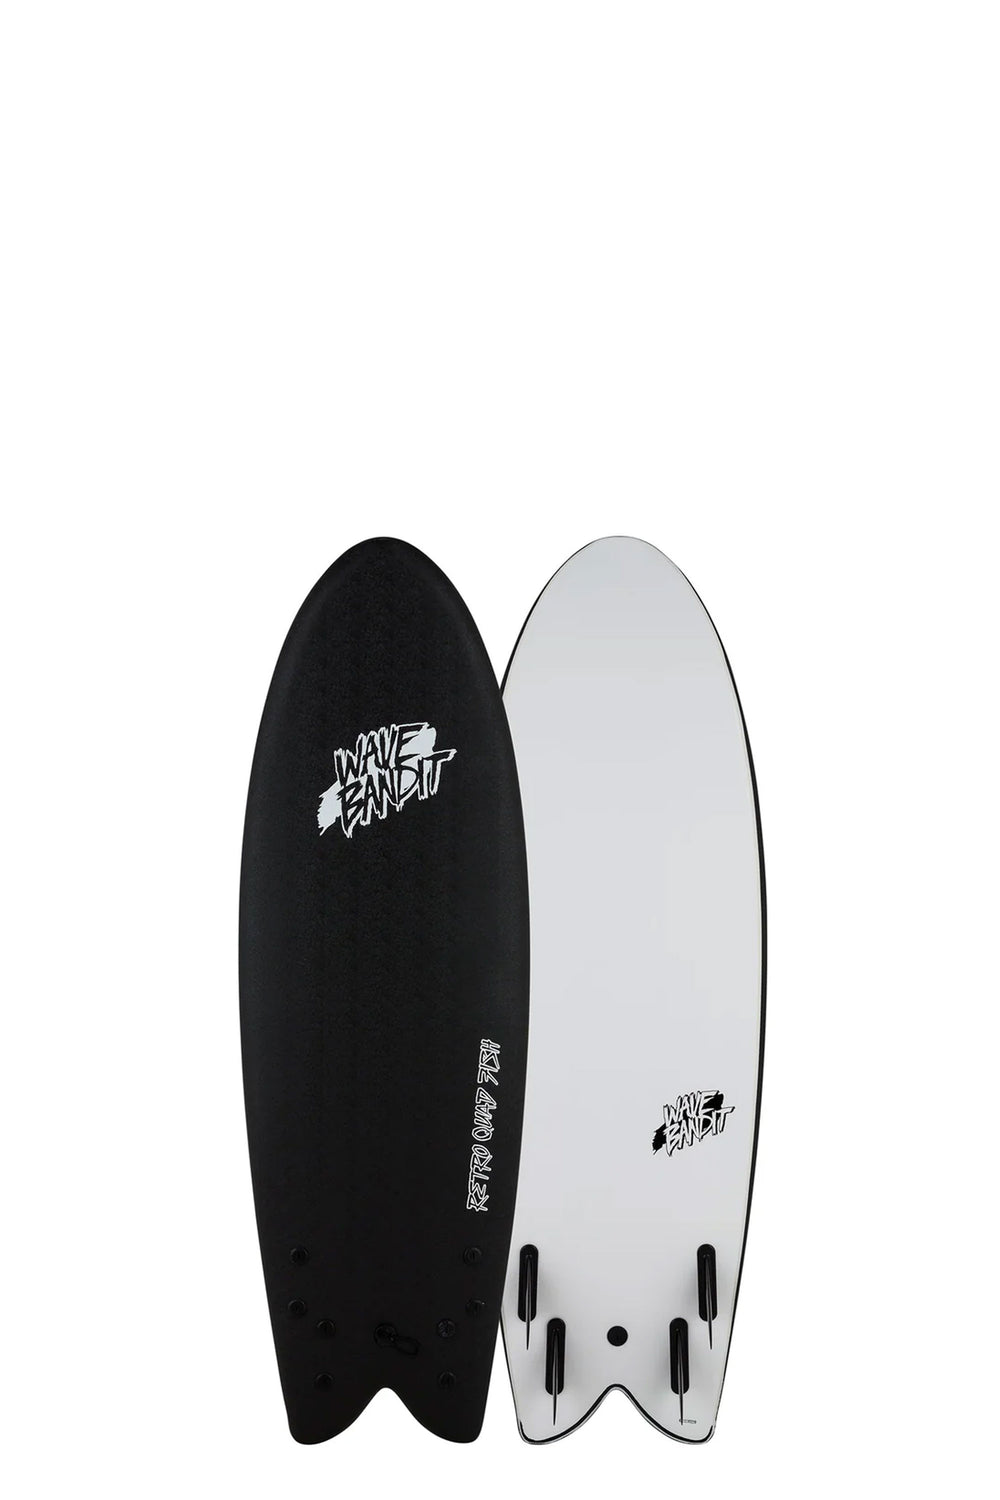 Pukas-Surf-Shop-Catch-Surfboards-Wave-Bandit-5_8_-Black